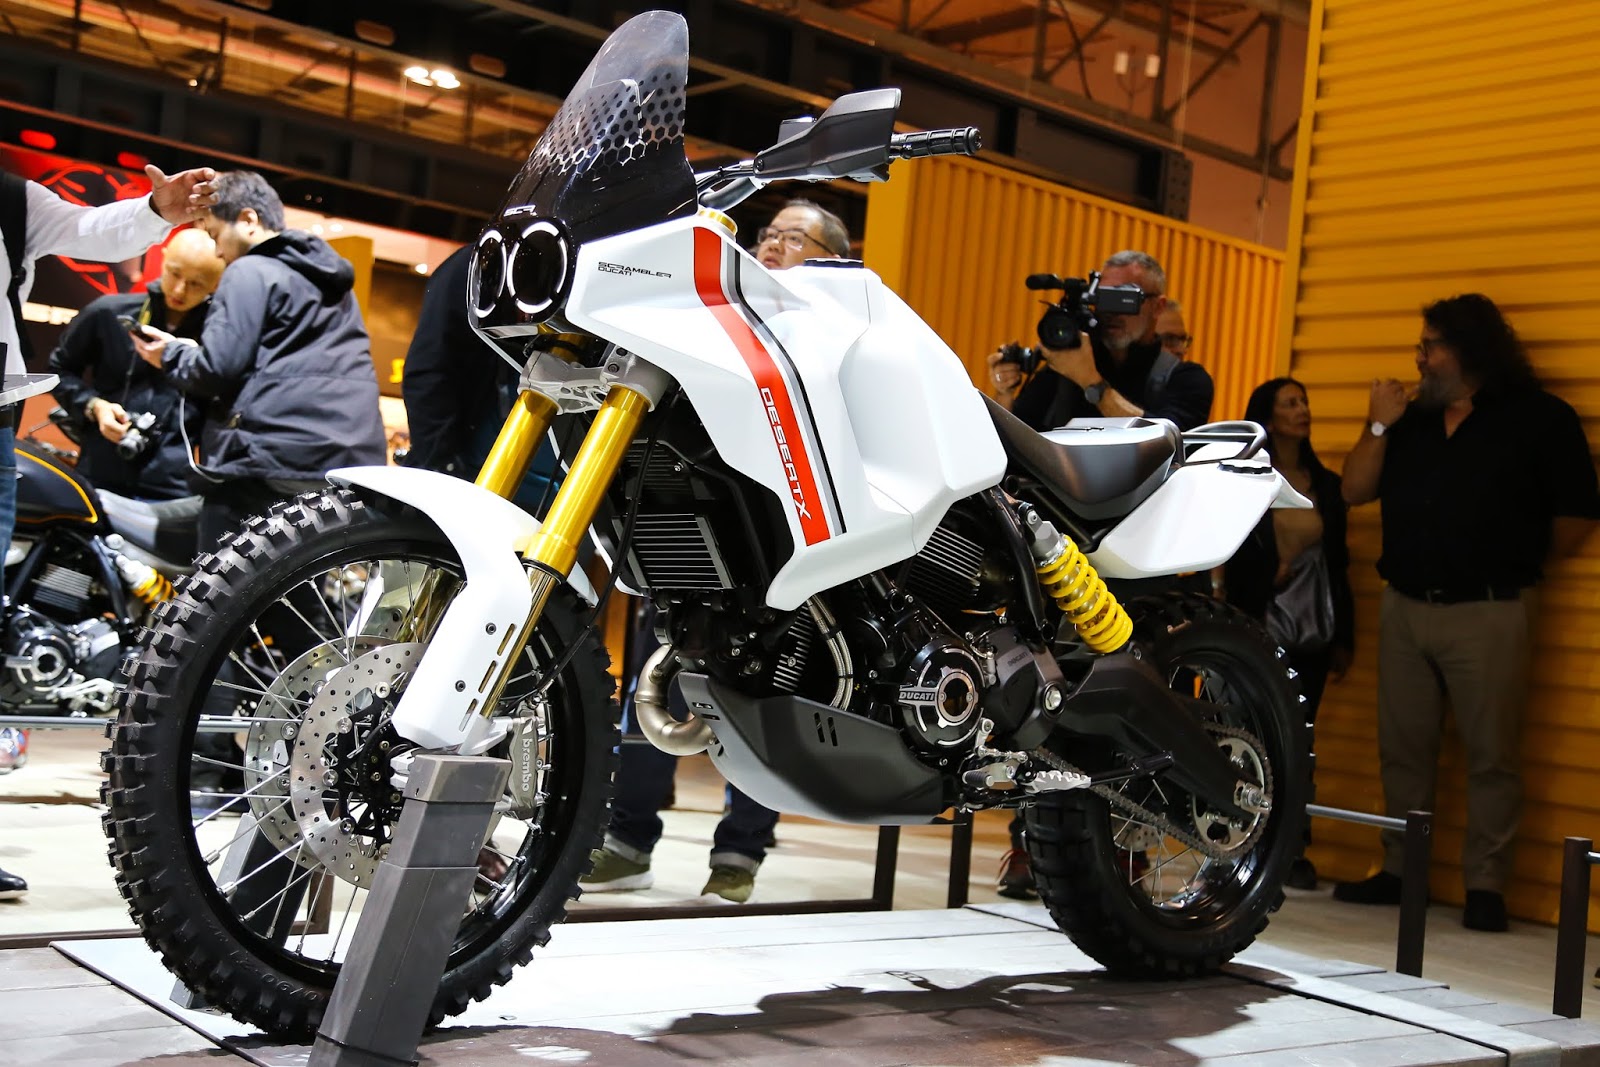 Ducati akan memperkenalkan motor petualang terbarunya yang cukup gahar, yakni New Ducati Desert X